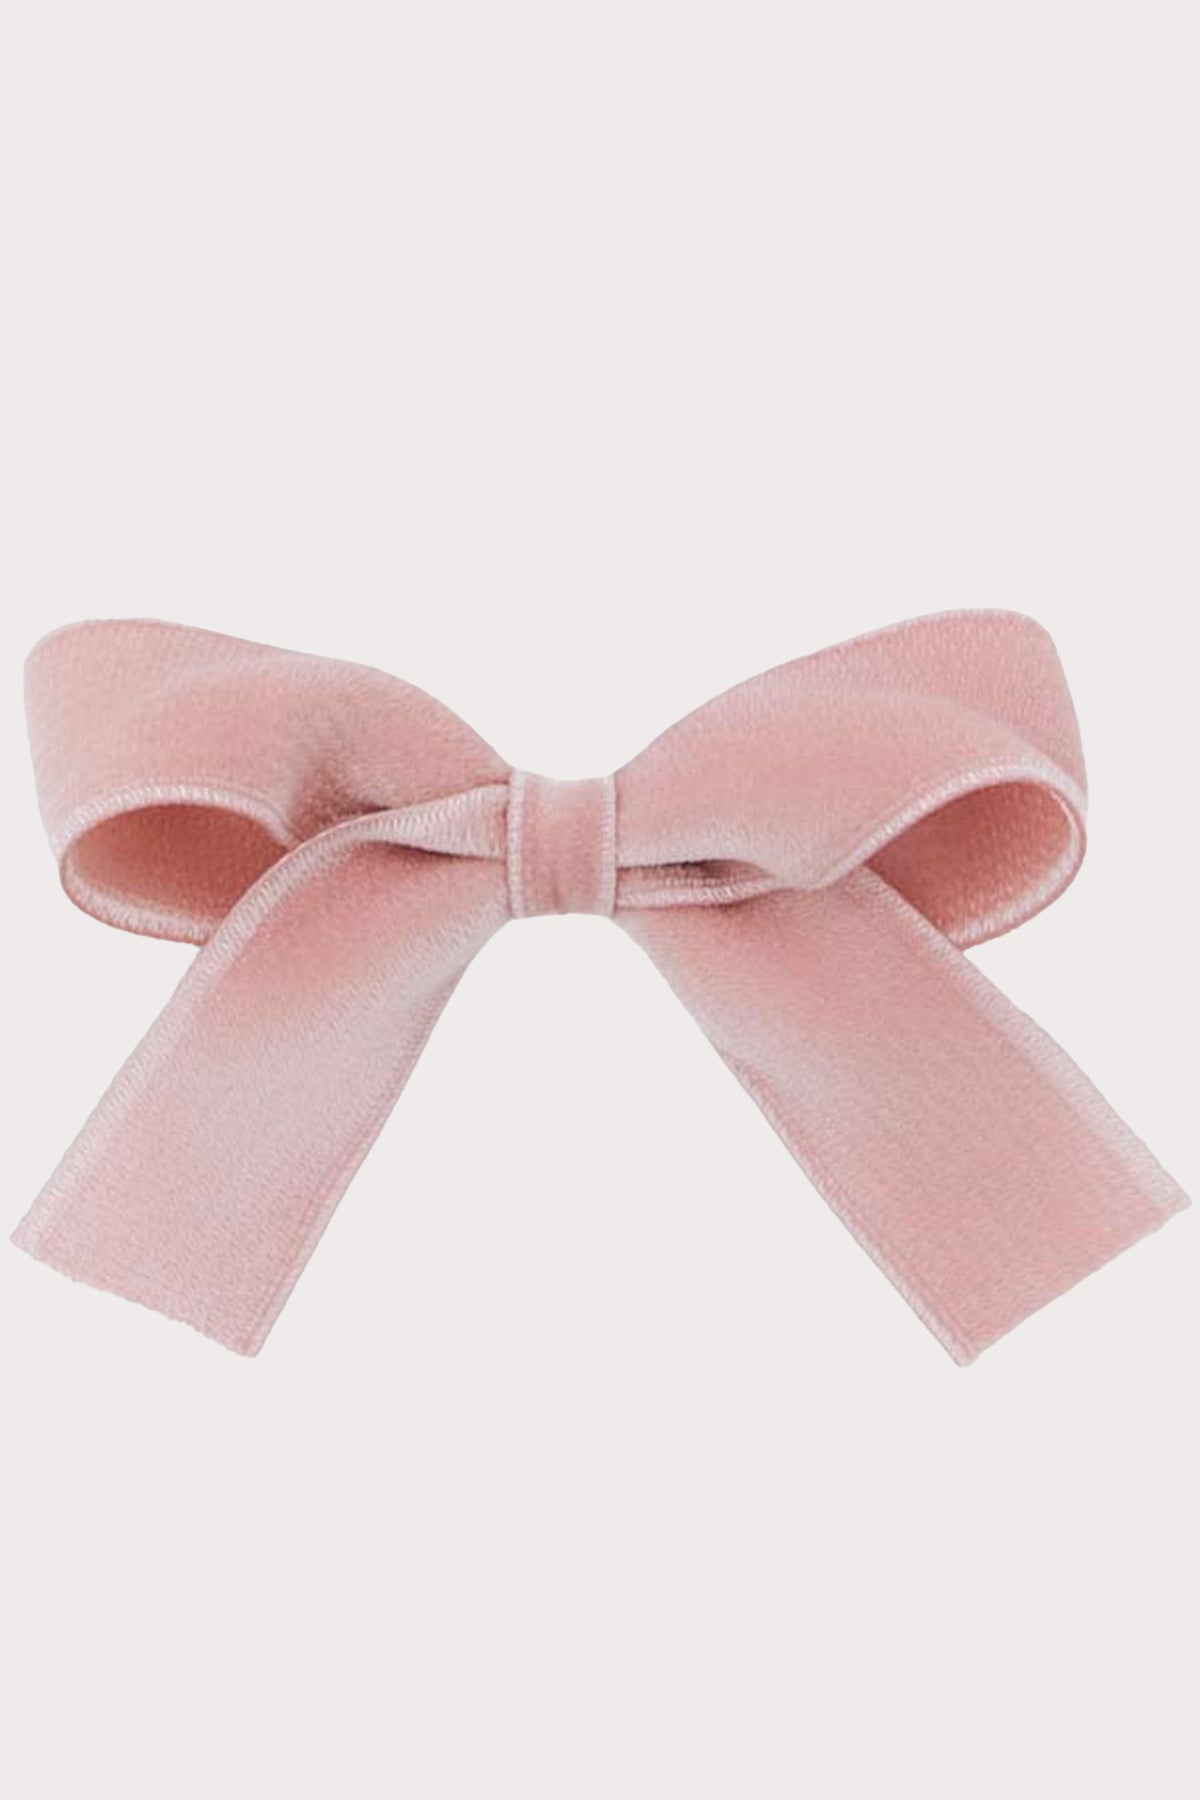 olilia designs velvet hair bow pink